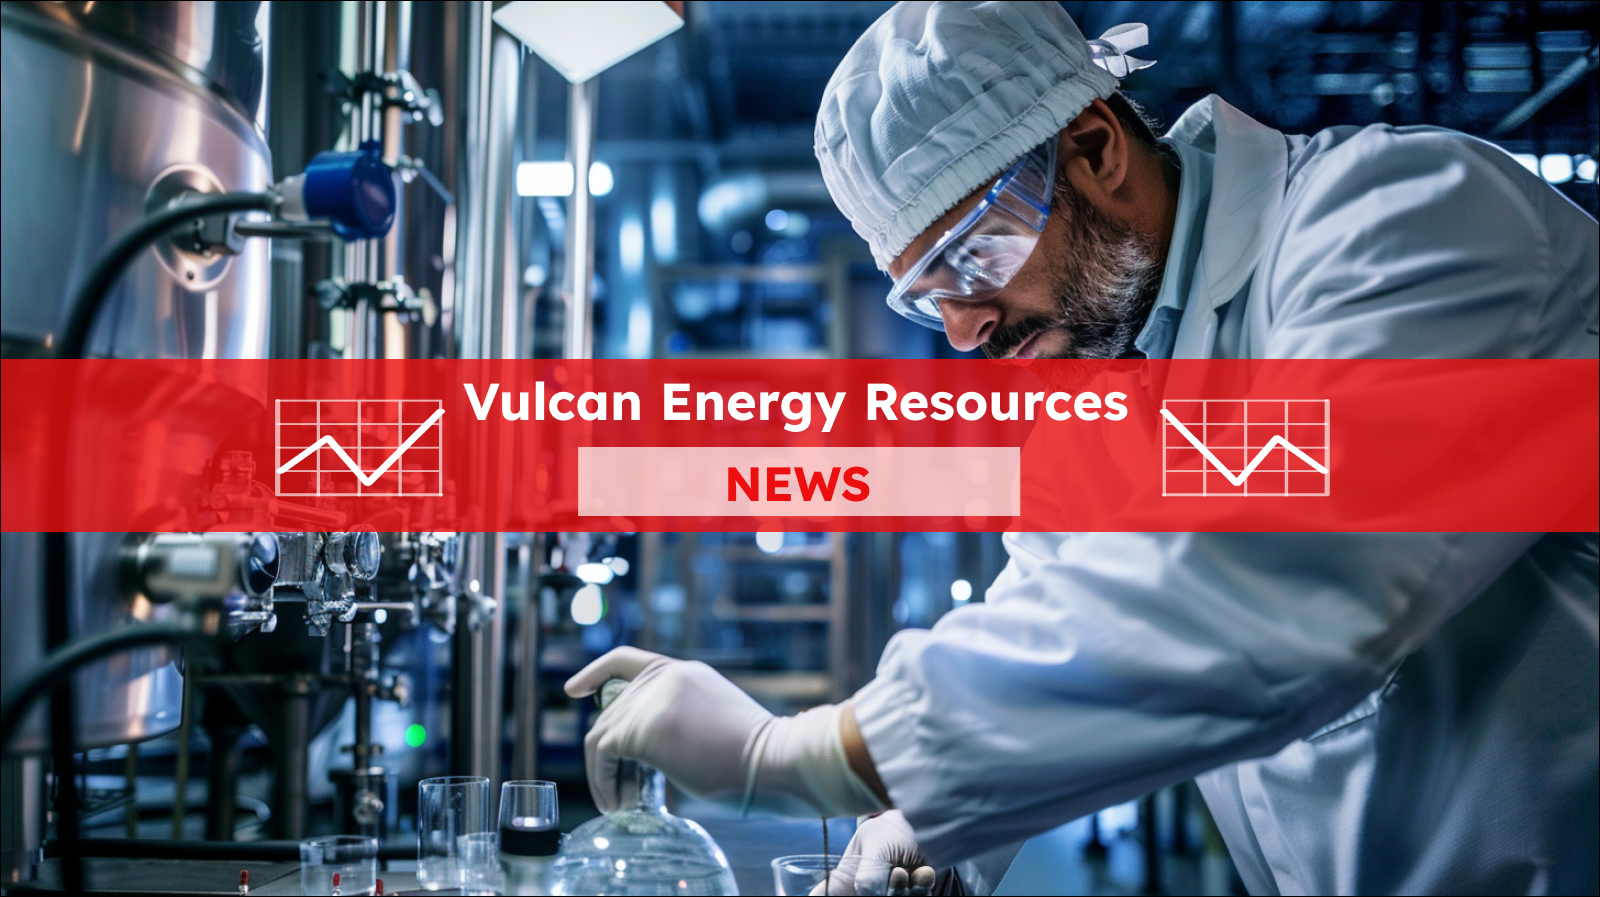 Ein Wissenschaftler in Schutzkleidung in einem modernen Labor, mit einem Vulcan Energy Resources  NEWS Banner